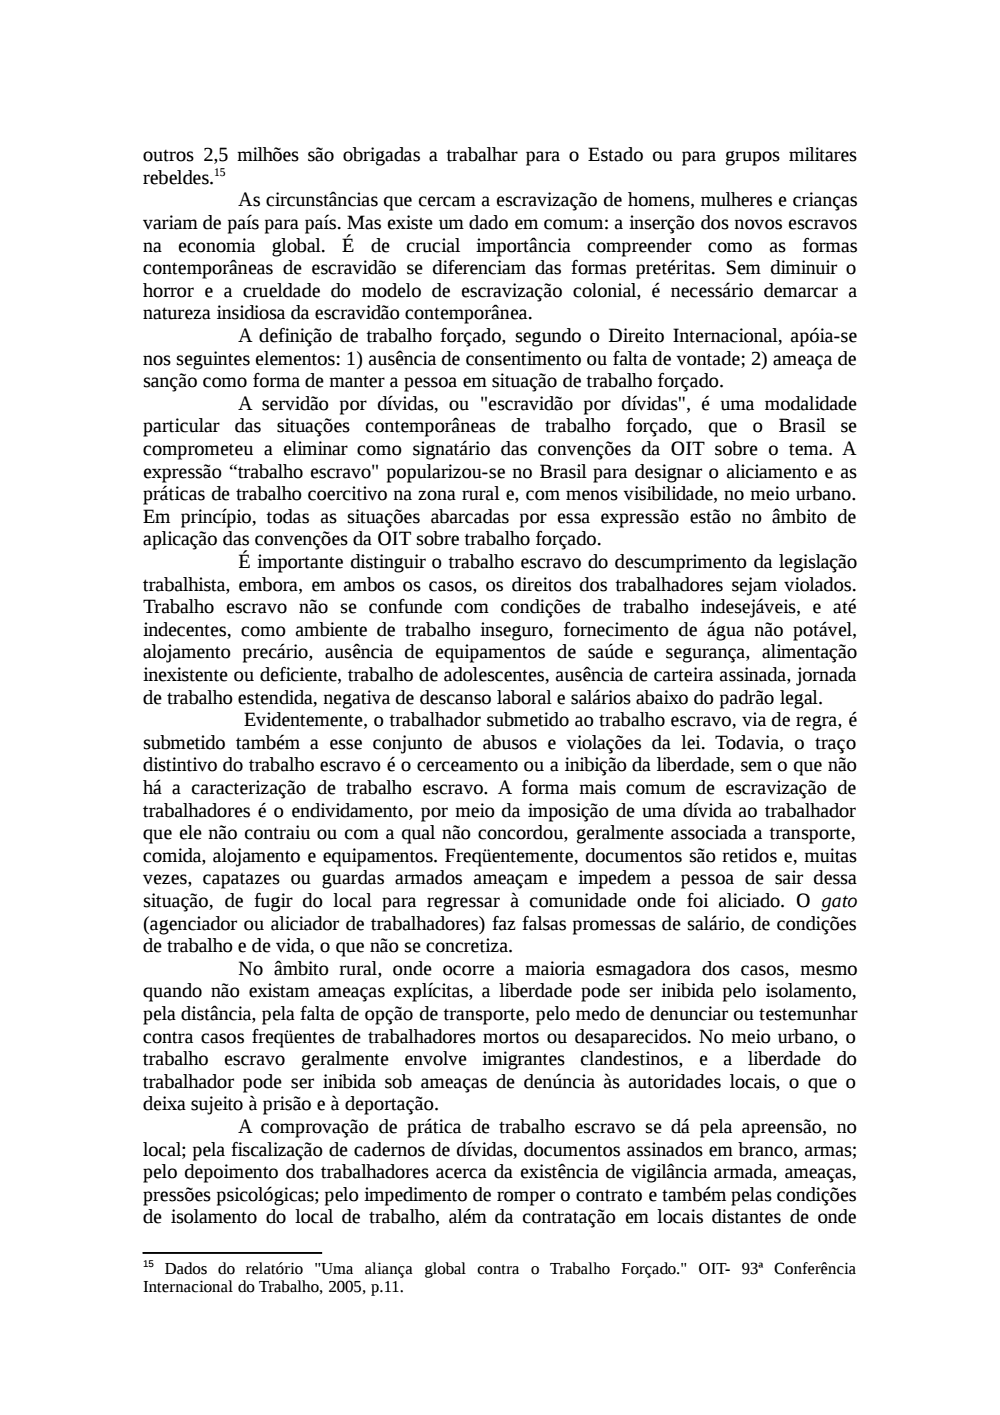 Page 43 from Relatório final da comissão